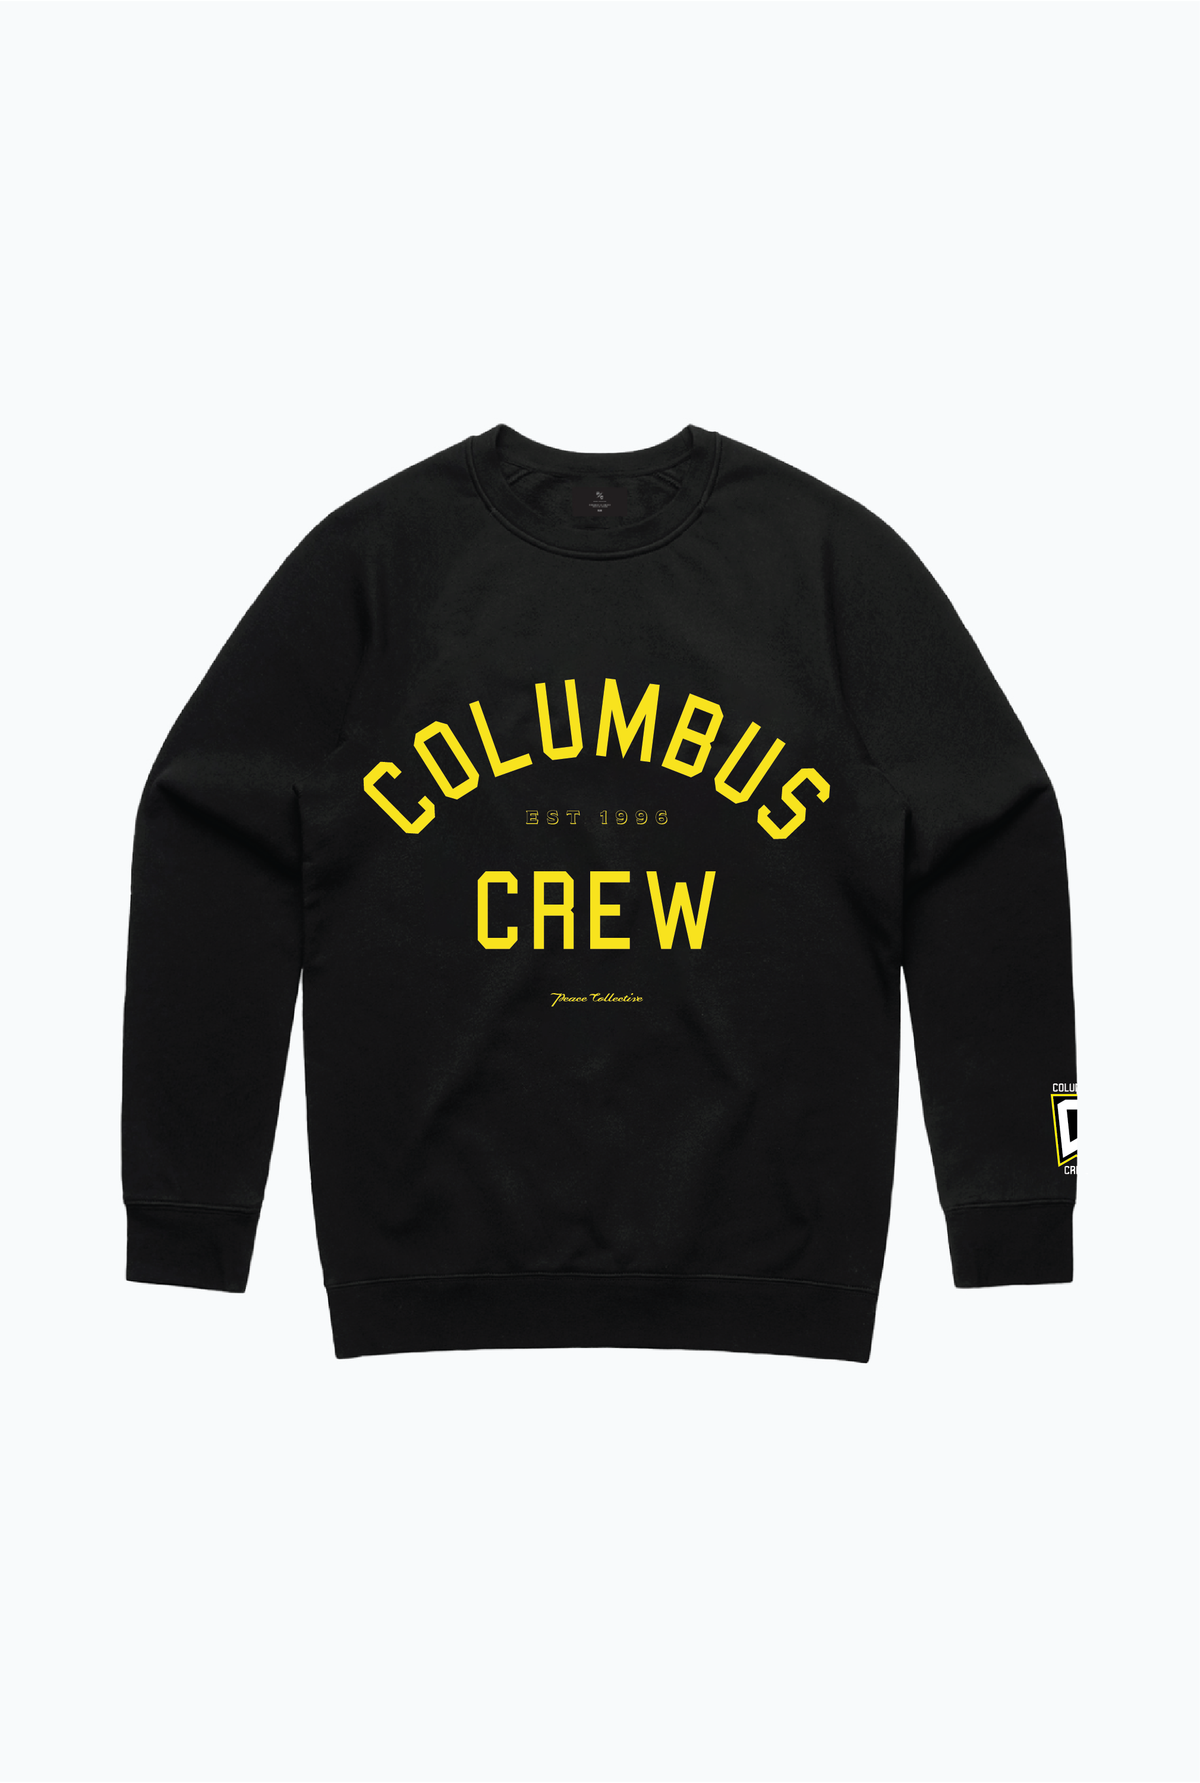 Columbus Crew Essentials Crewneck - Black